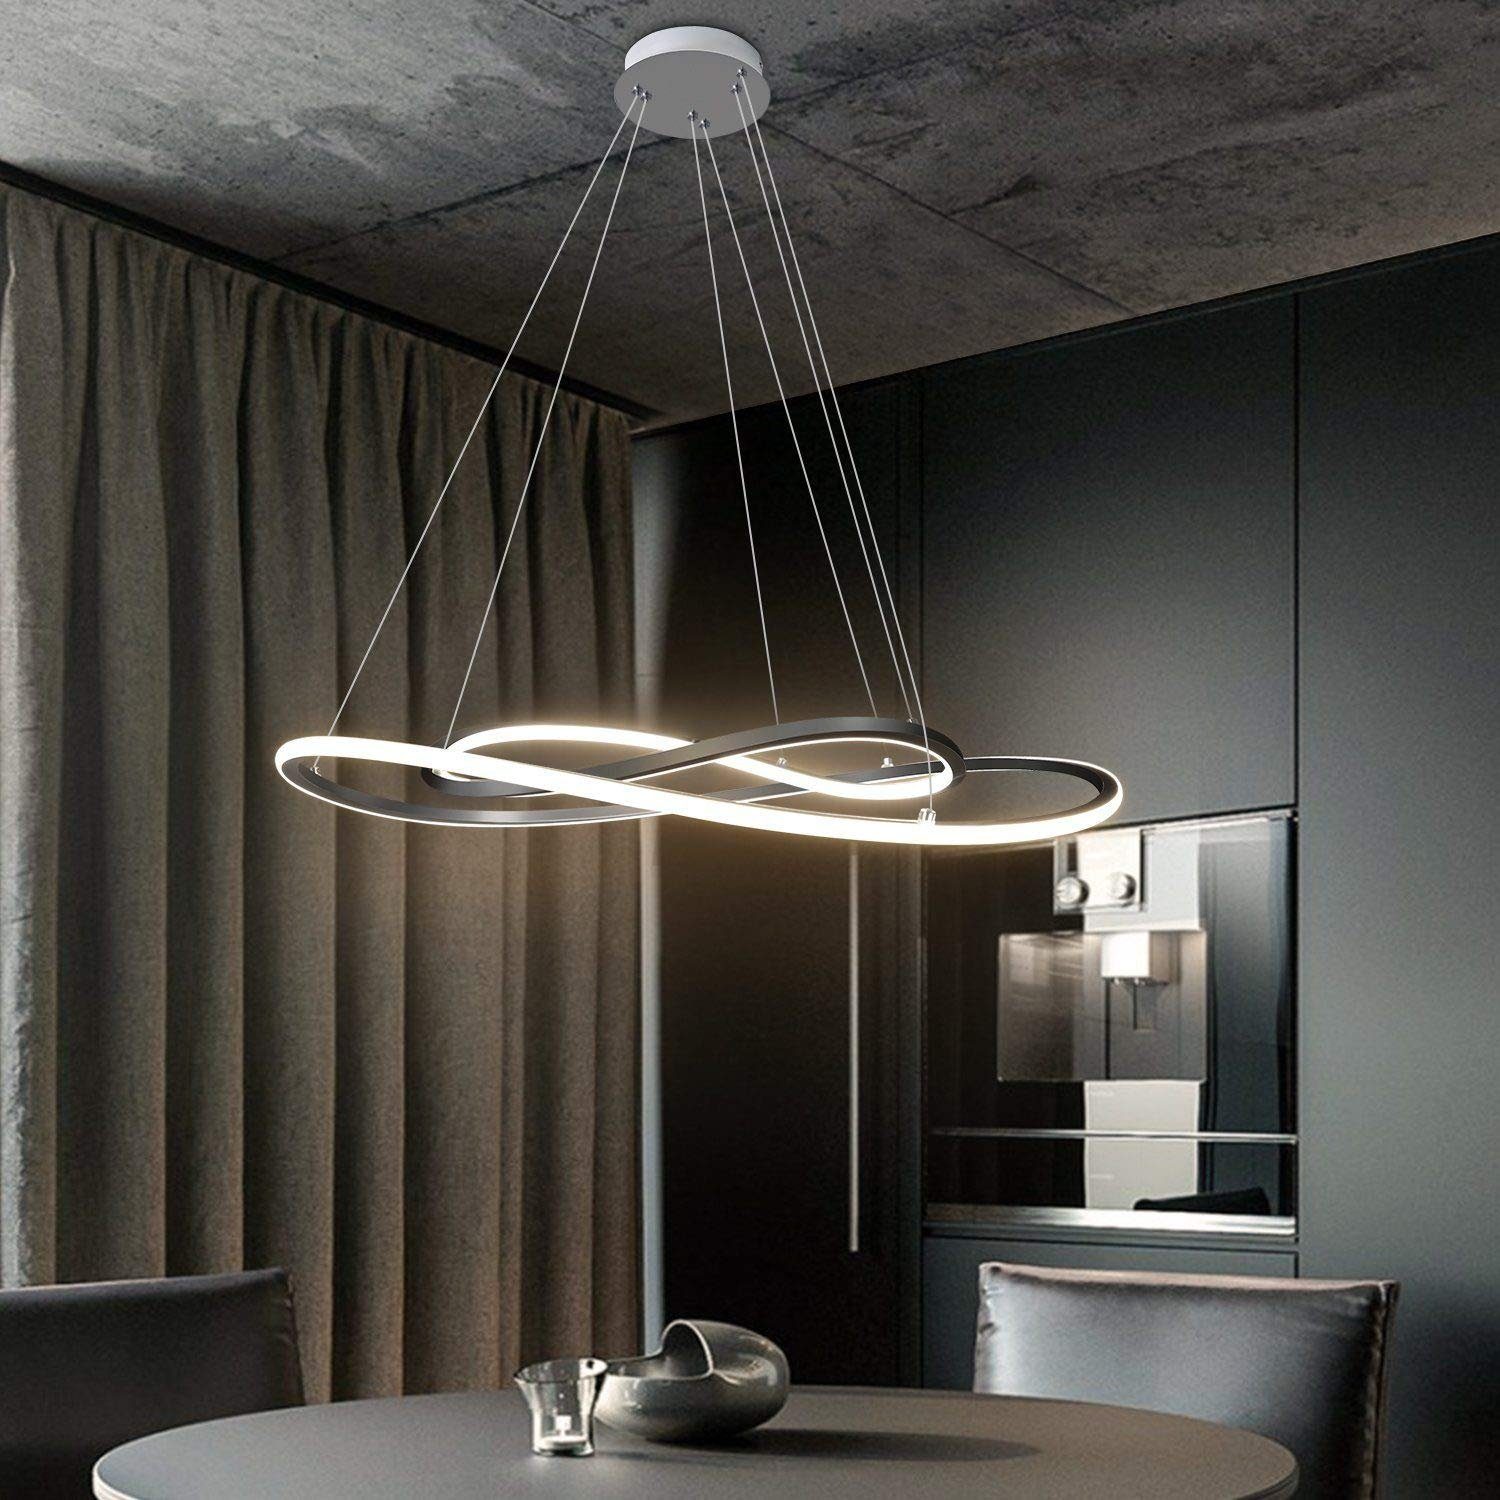 LED Decken Hänge Lampe Wohnzimmer Esszimmer Kronleuchter weiß Pendel Leuchte 